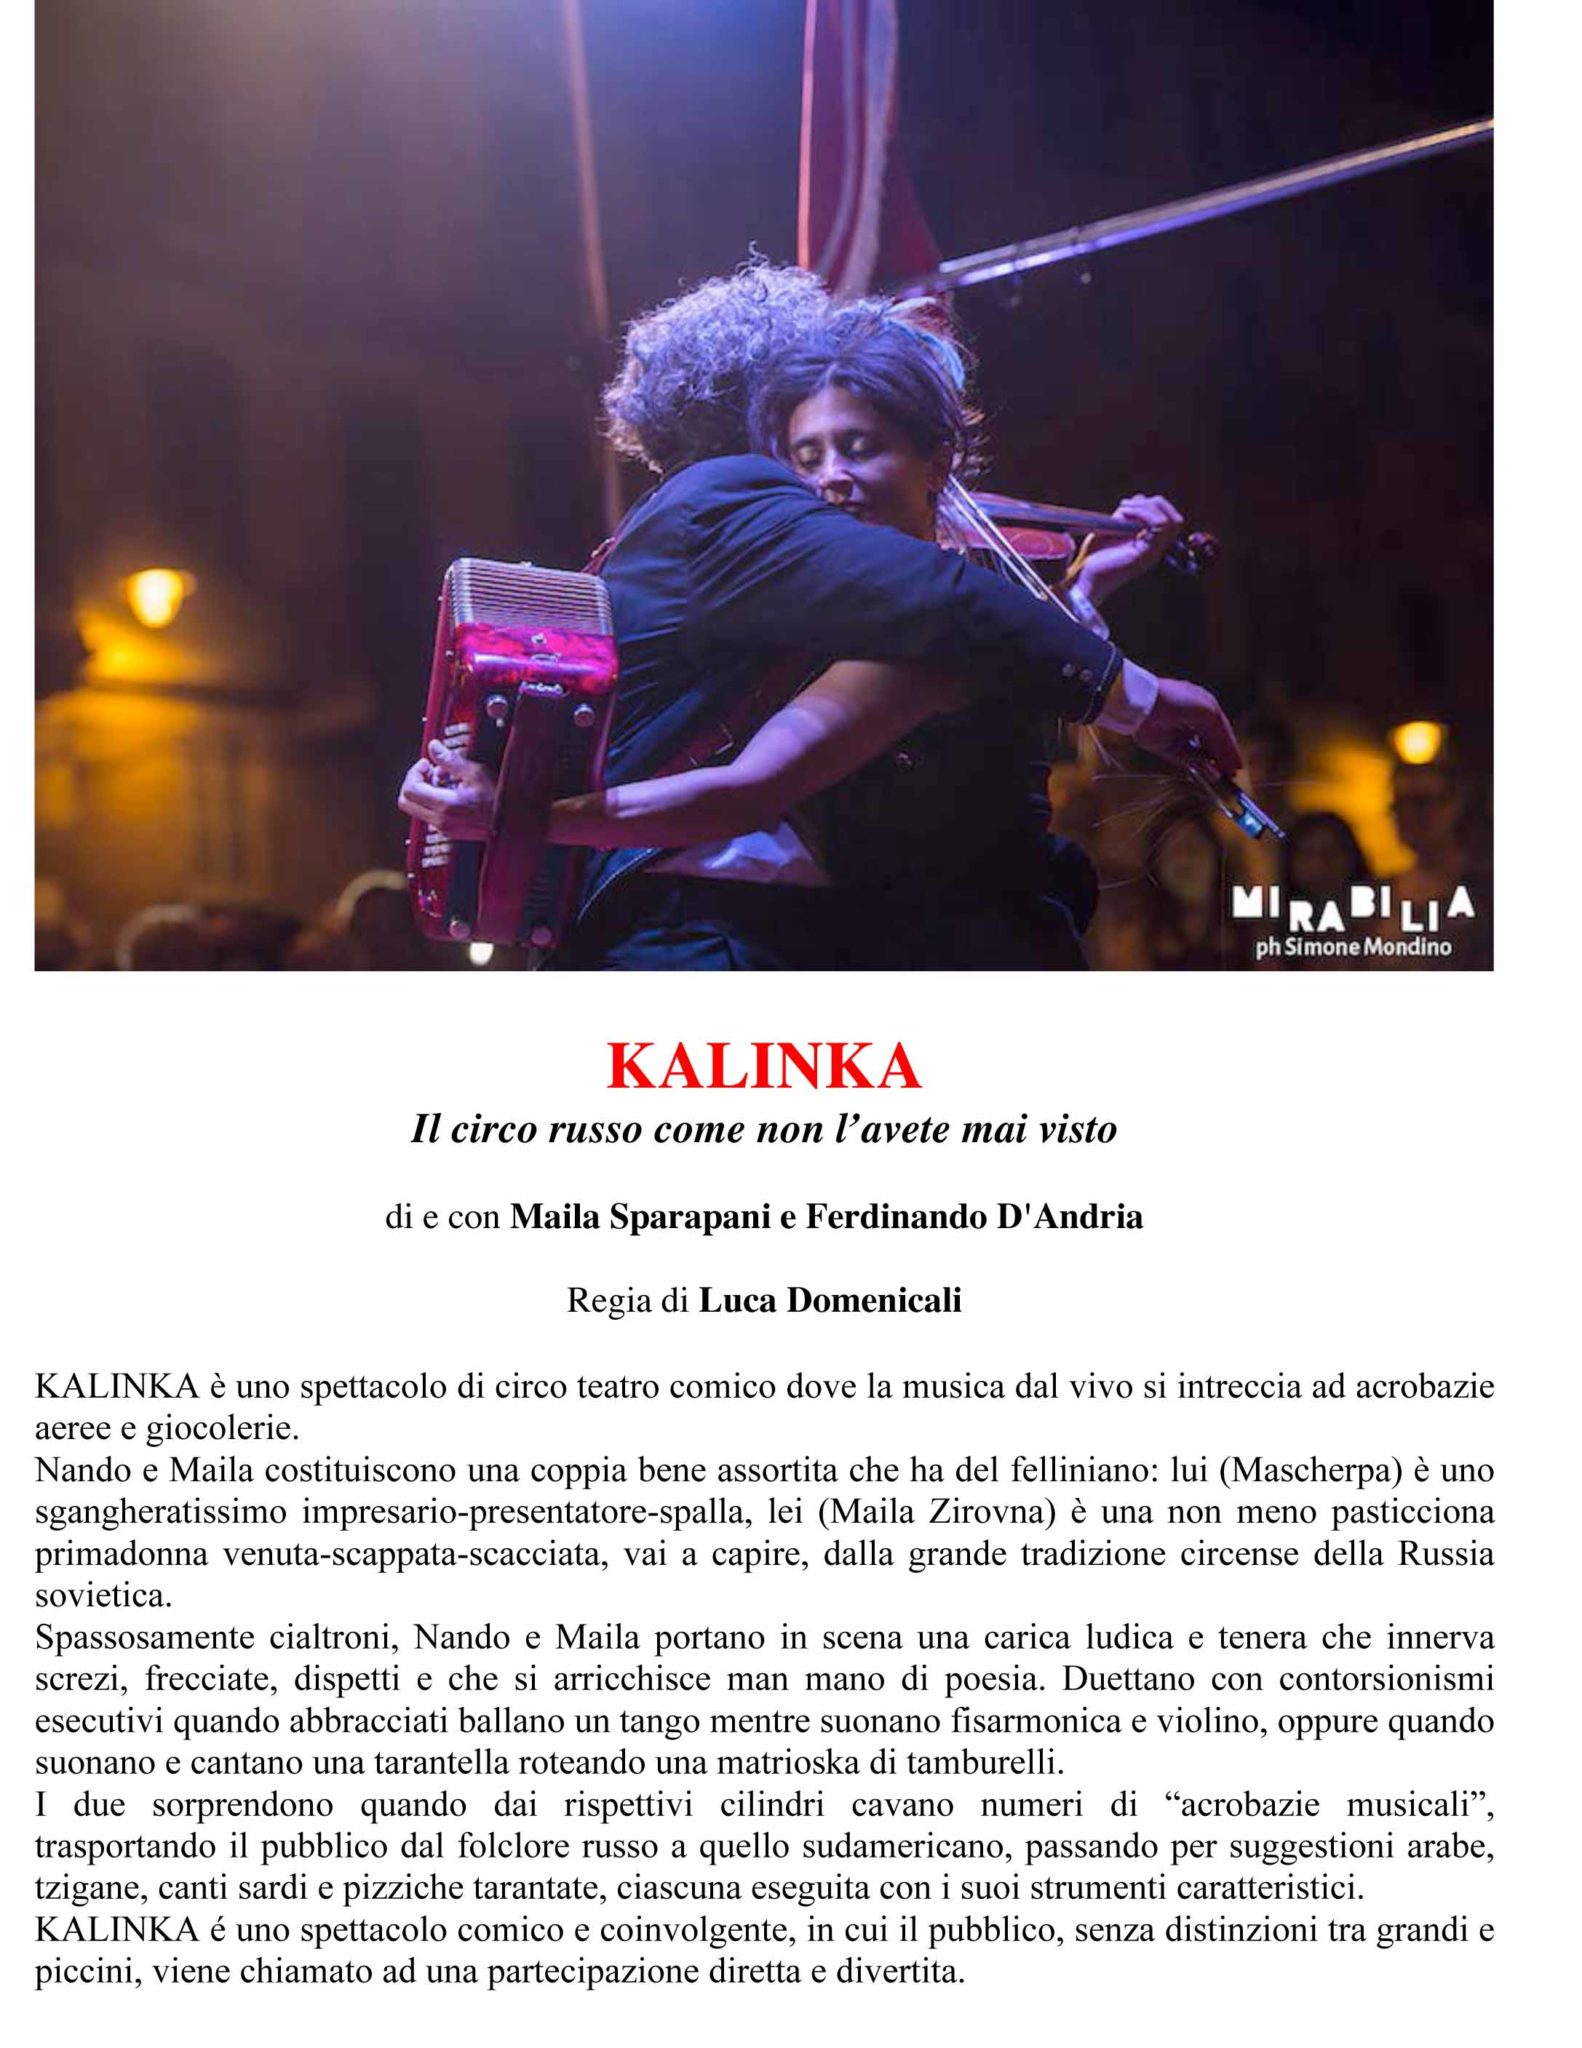 Dossier KALINKA (Vanjuska moj) - Nando e Maila